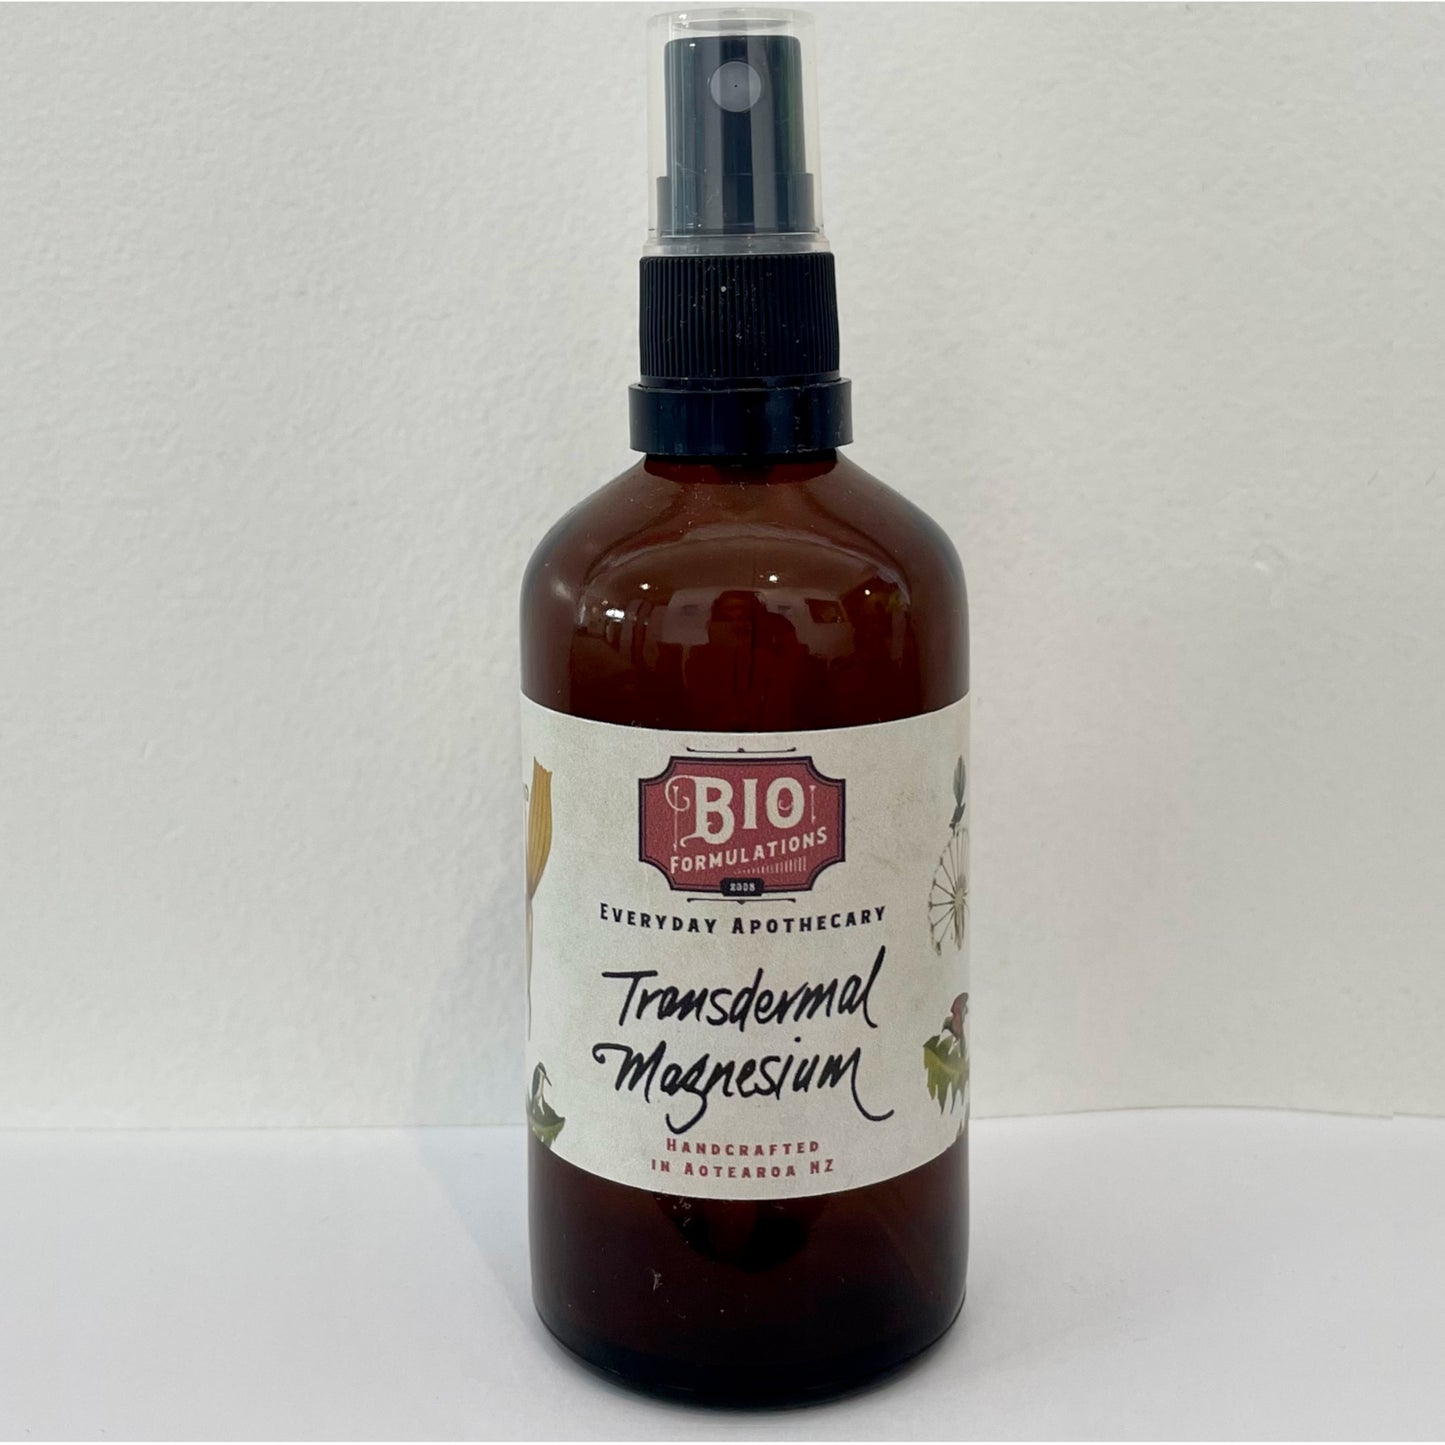 Bio Formulations Pure Magnesium Oil